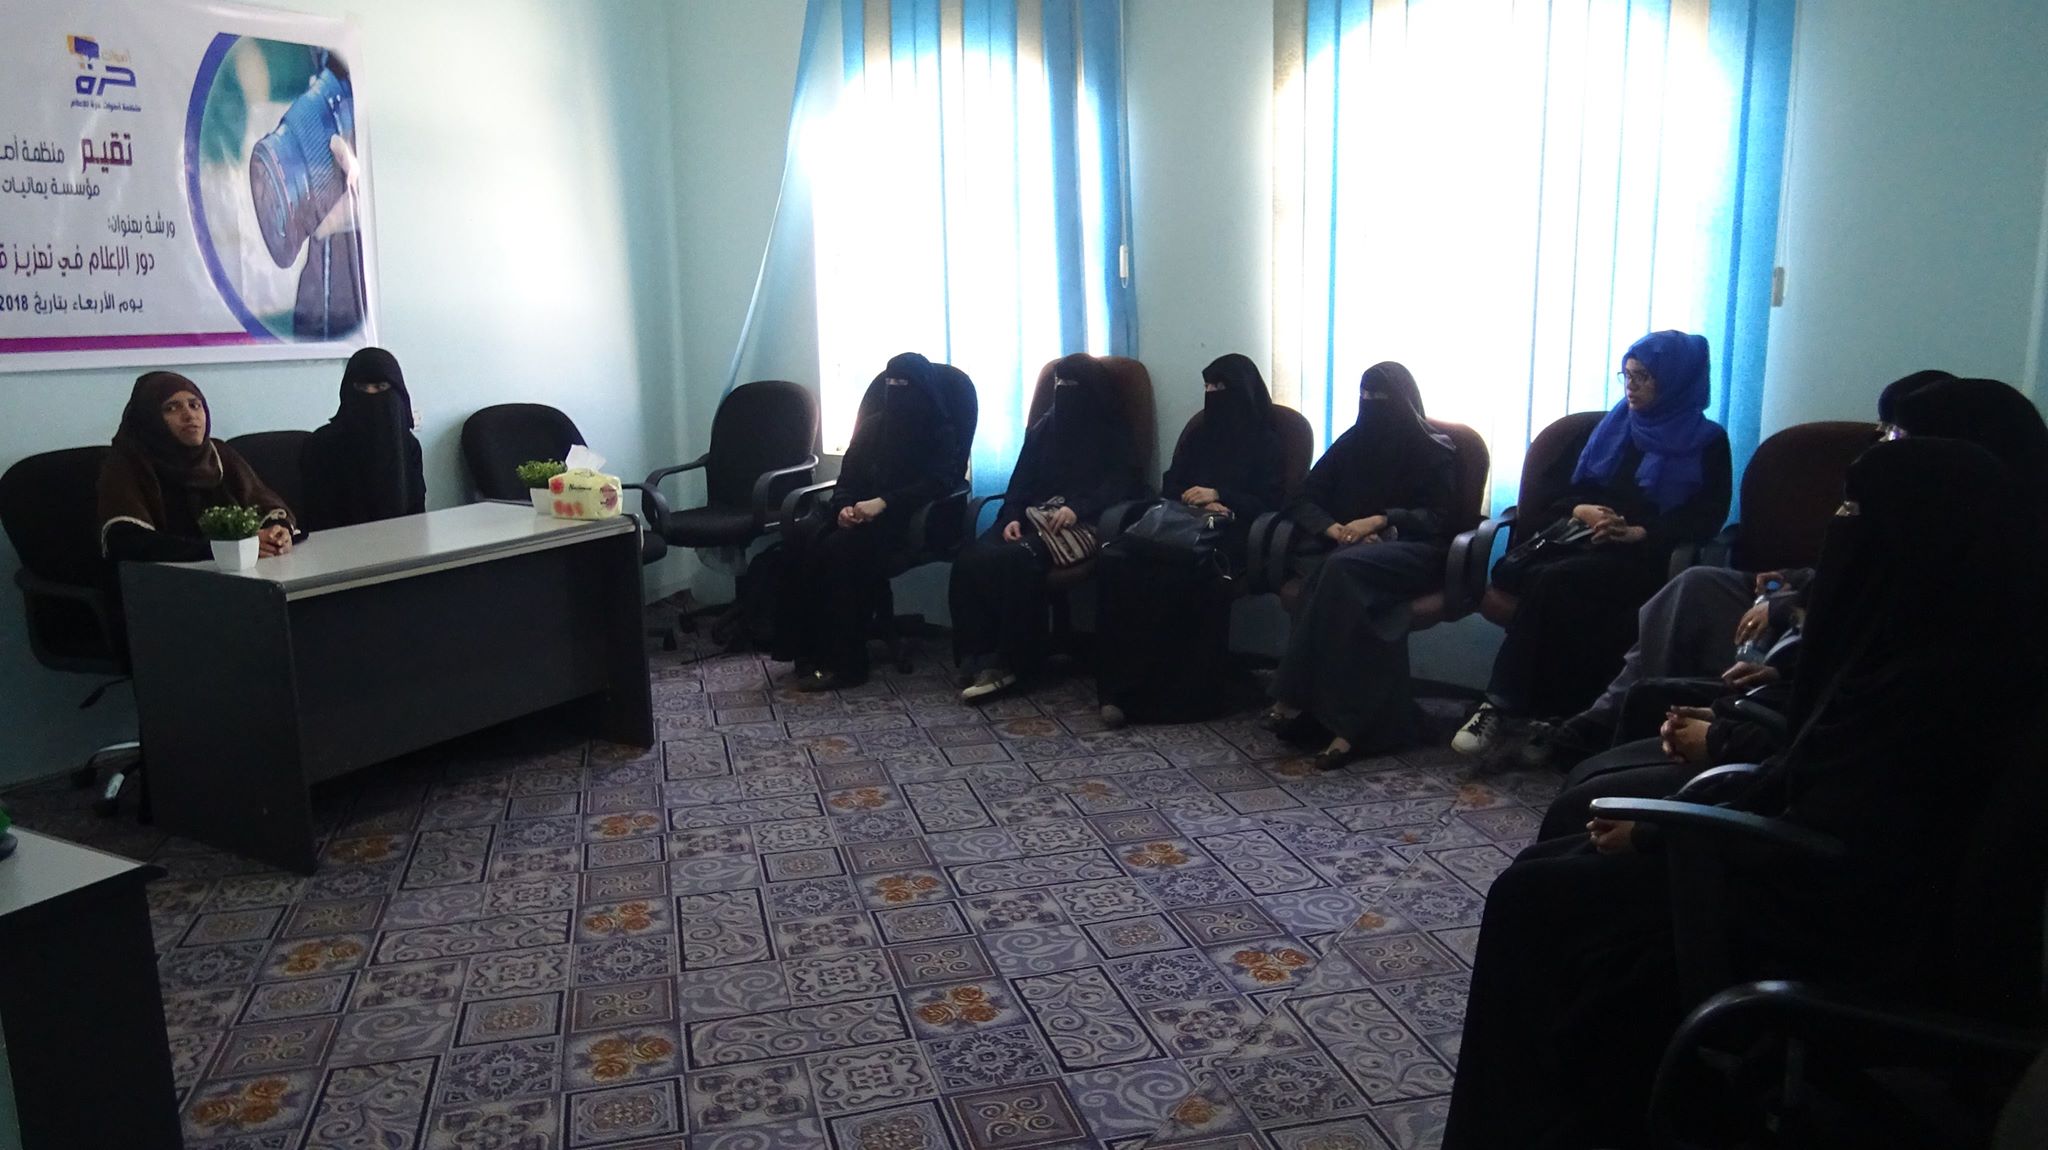 دور الإعلام في تعزيز قضايا المرأة” في ورشة عمل بصنعاء يمني برس